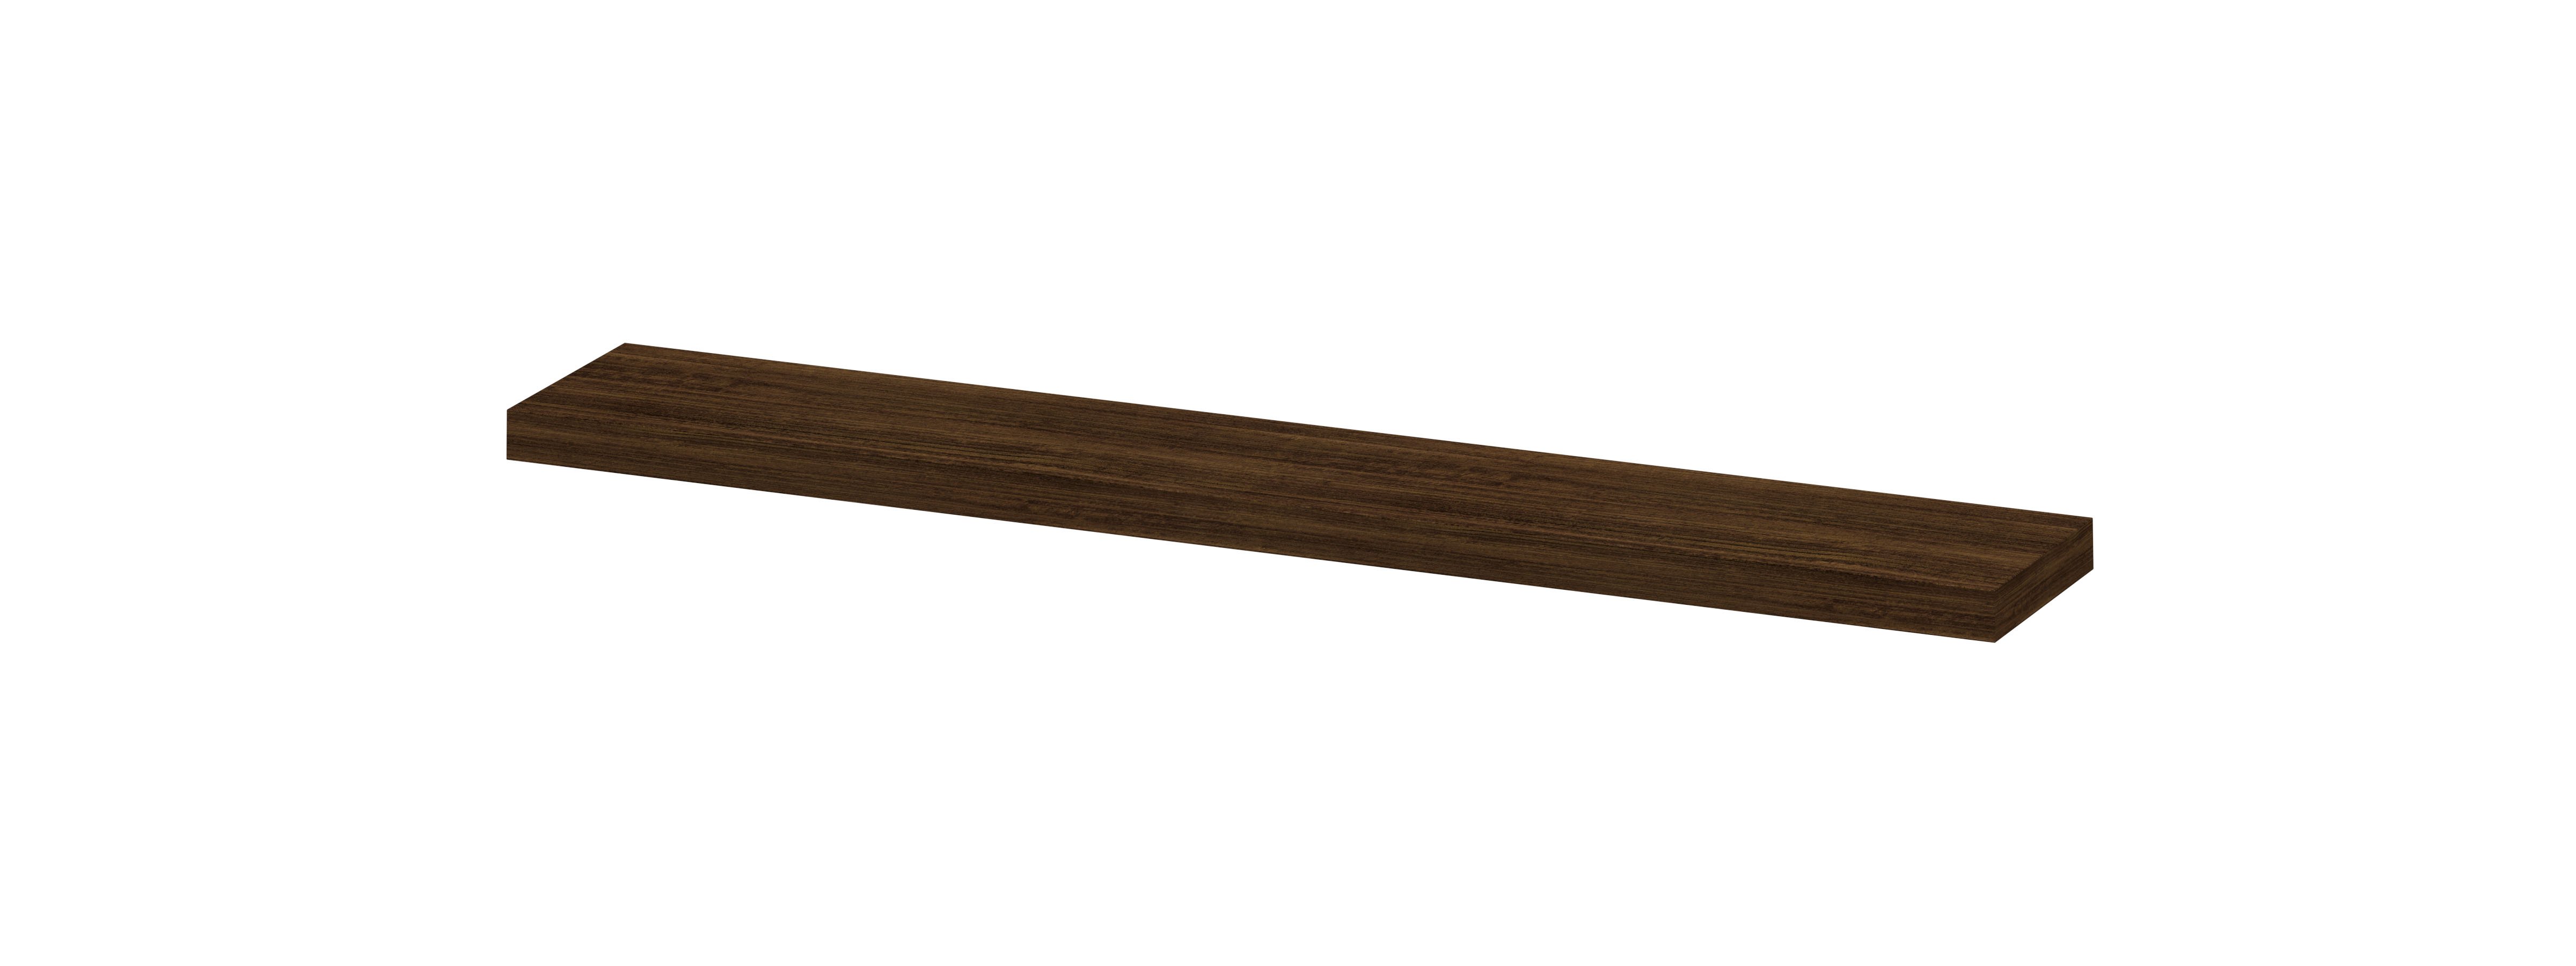 INK® wandplank in houtdecor 3,5cm dik variabele maat voor vrije ophanging inclusief blinde bevestiging 60-120x20x3,5cm, koper eiken